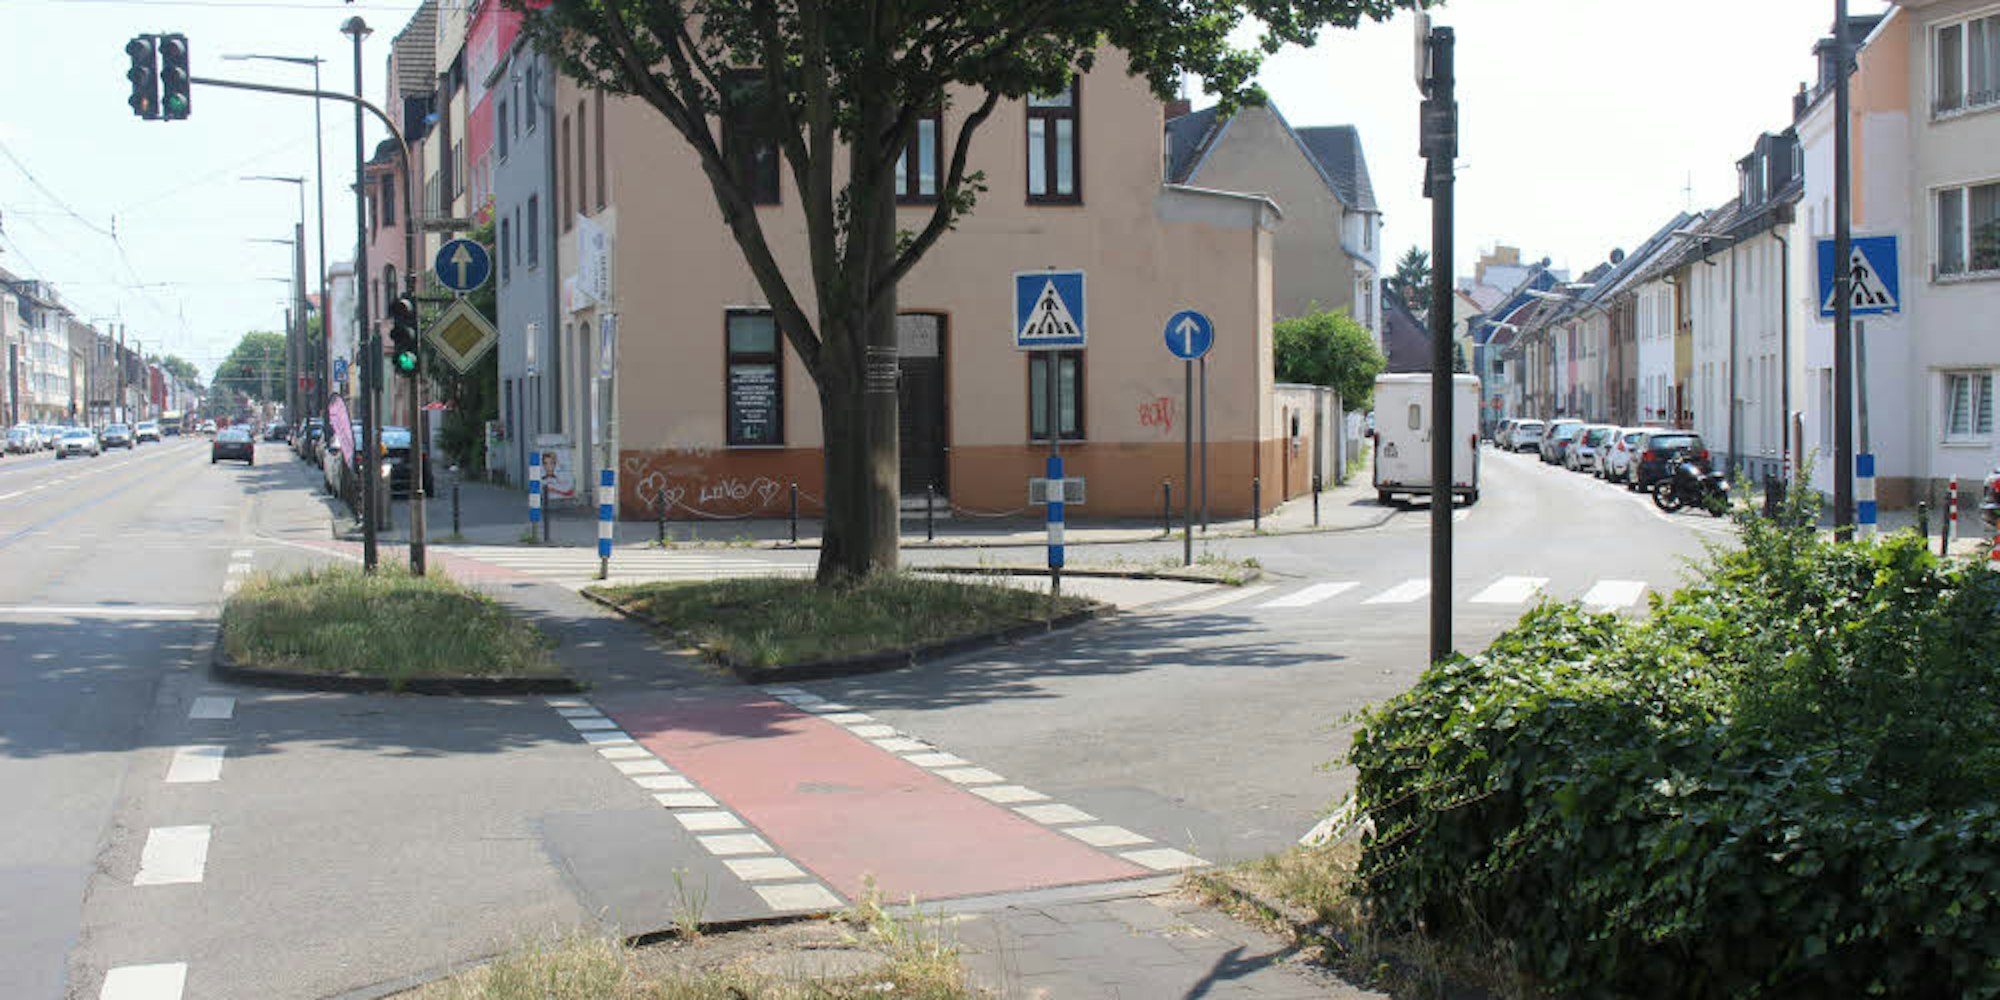 Die im Bild vordere Zufahrt von der Neusser Straße zur Jesuitengasse soll wegfallen – dort würde ein kleines Plätzchen entstehen.